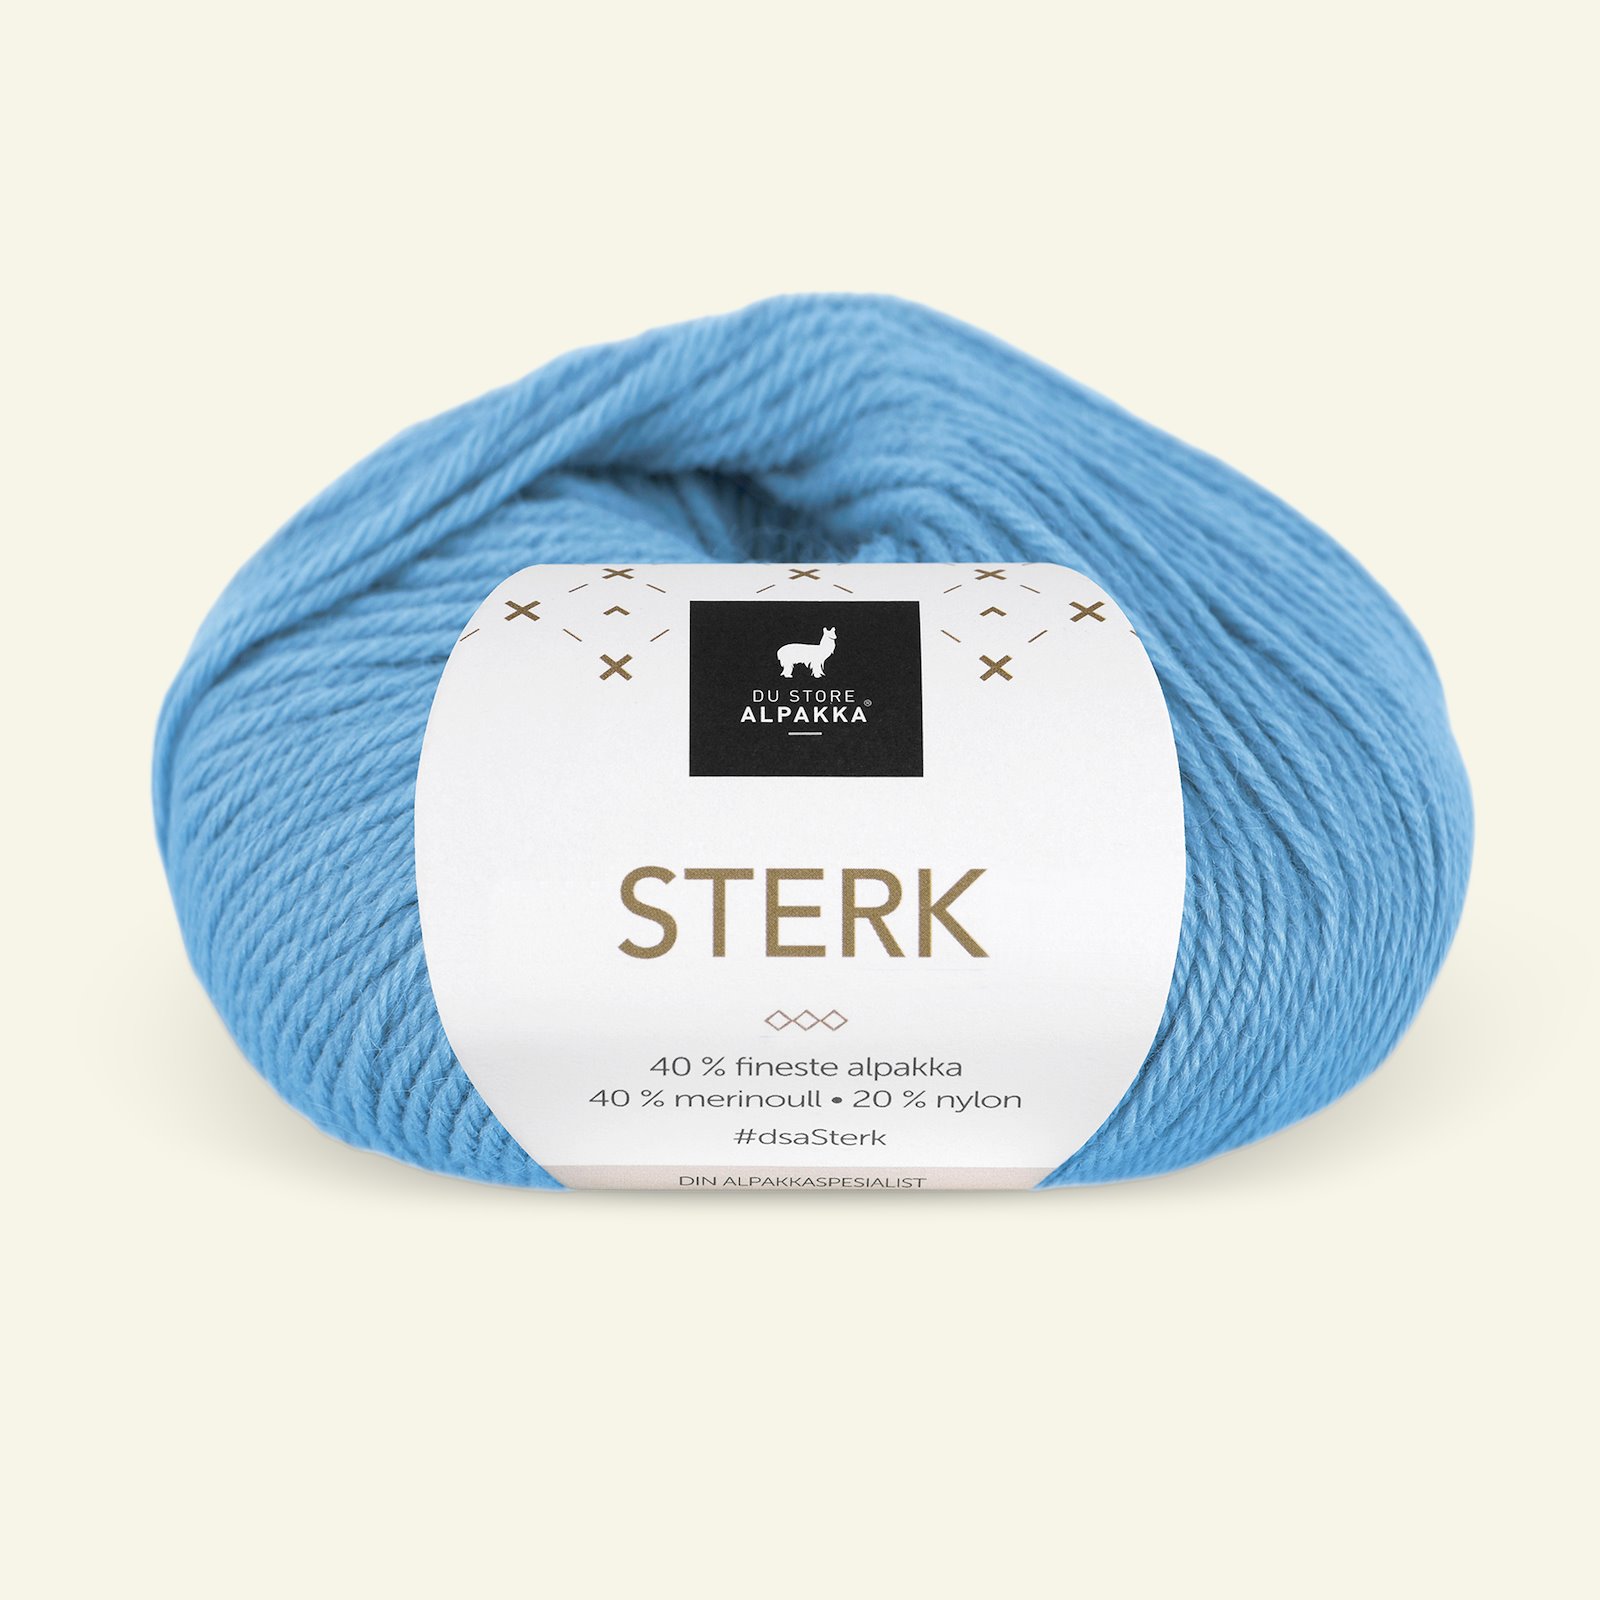 Du Store Alpakka, Alpaka merino Mischgarn "Sterk", leichtes blau (918) 90000710_pack